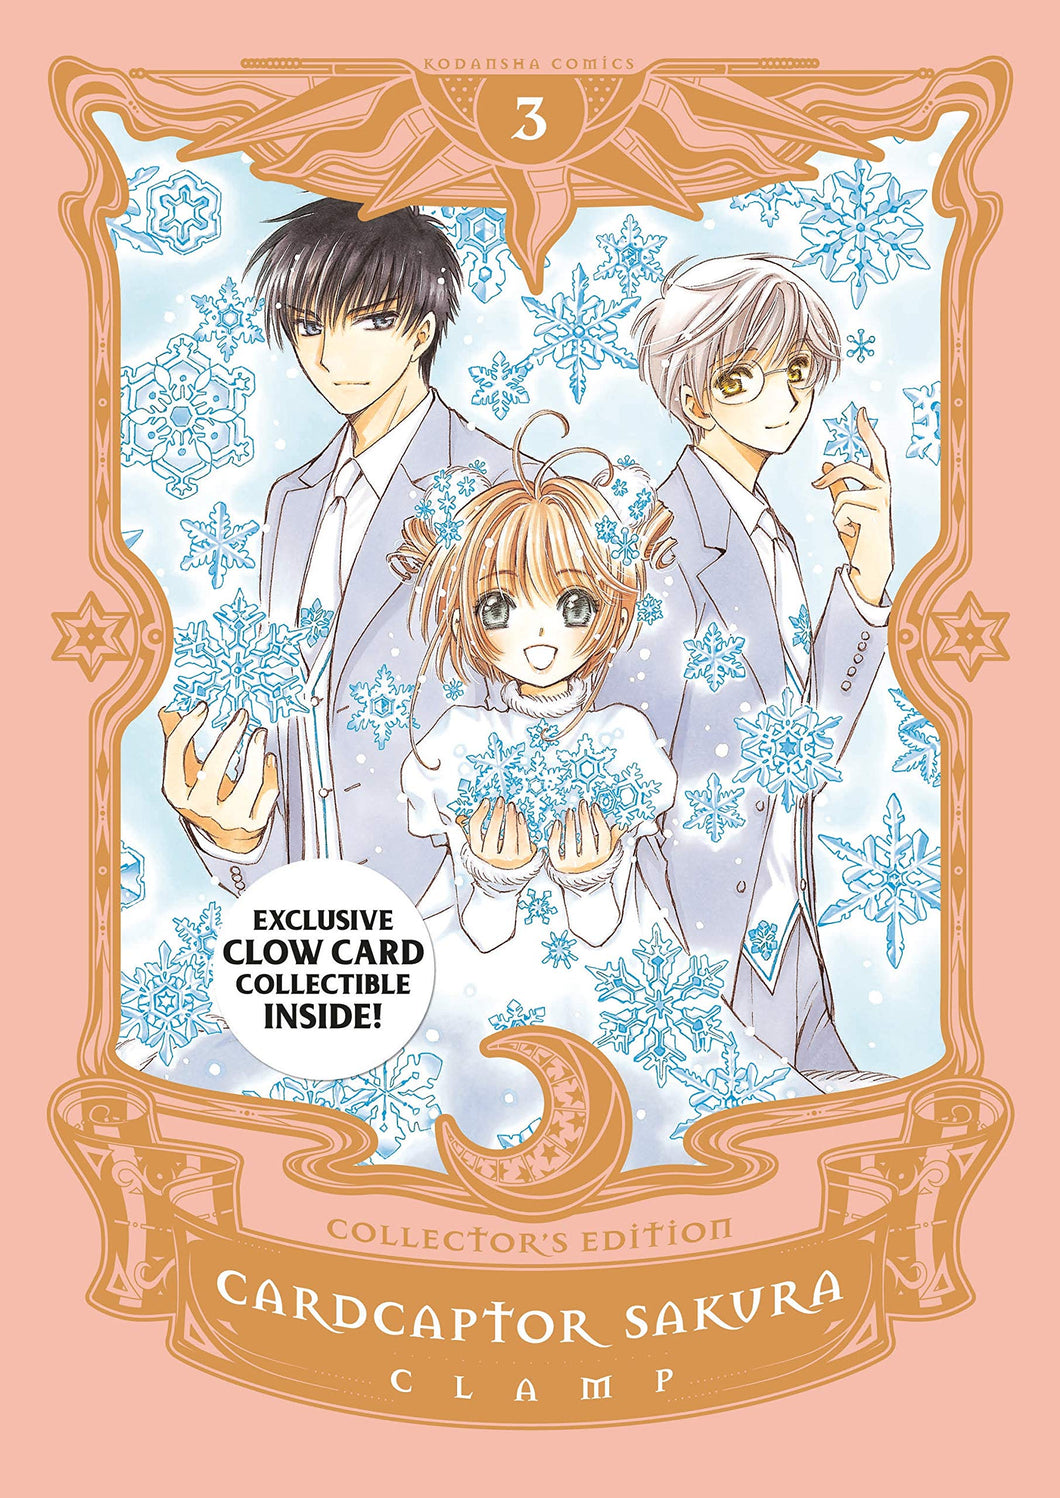 Cardcaptor Sakura Collector's Edition Volume 3